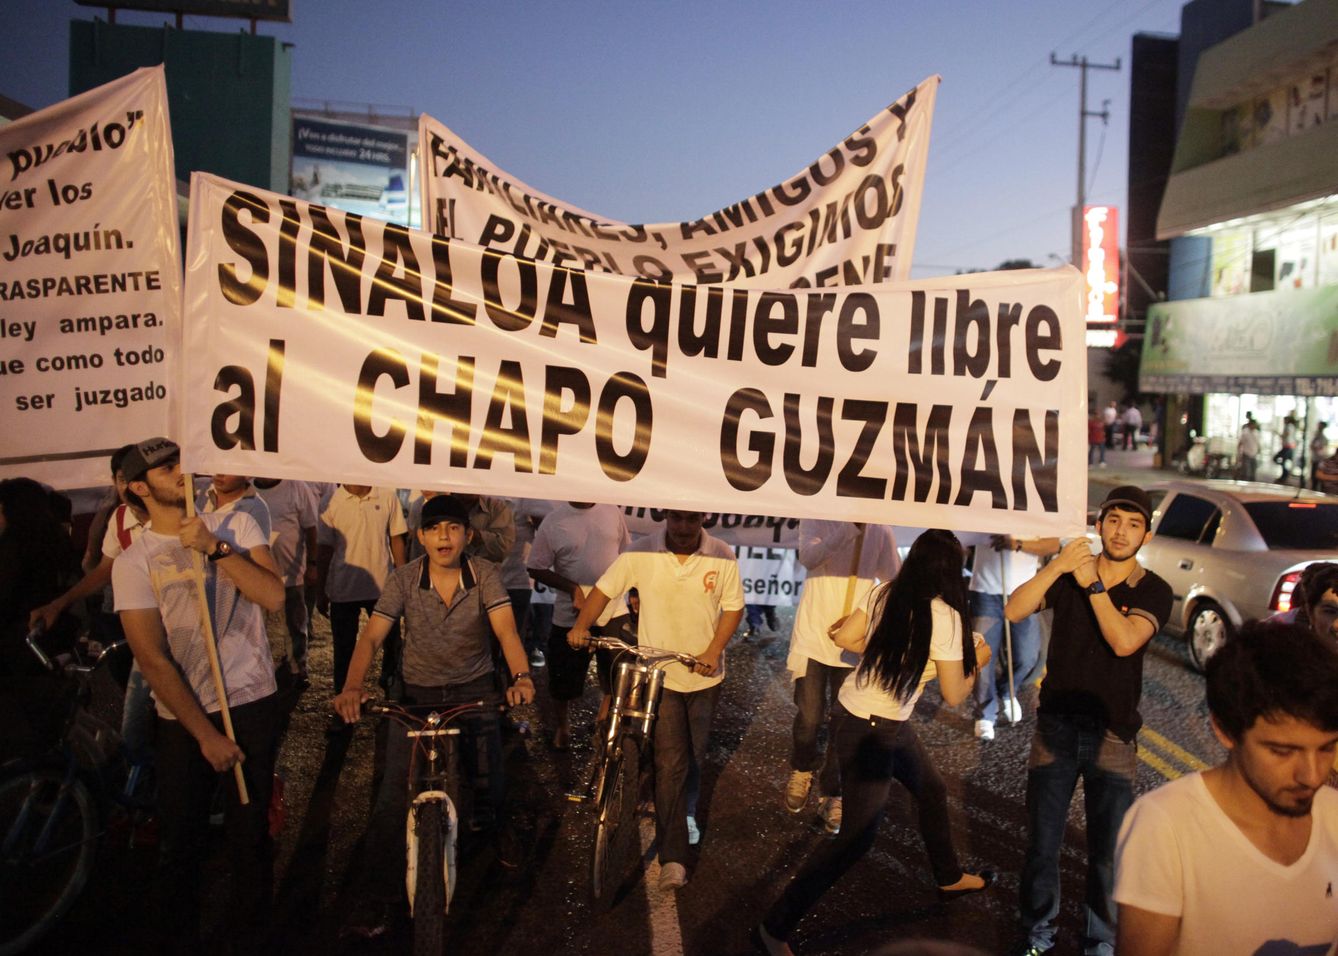 Protesta a favor de la liberación del Chapo Guzmán durante una marcha en Culiacán (Reuters).